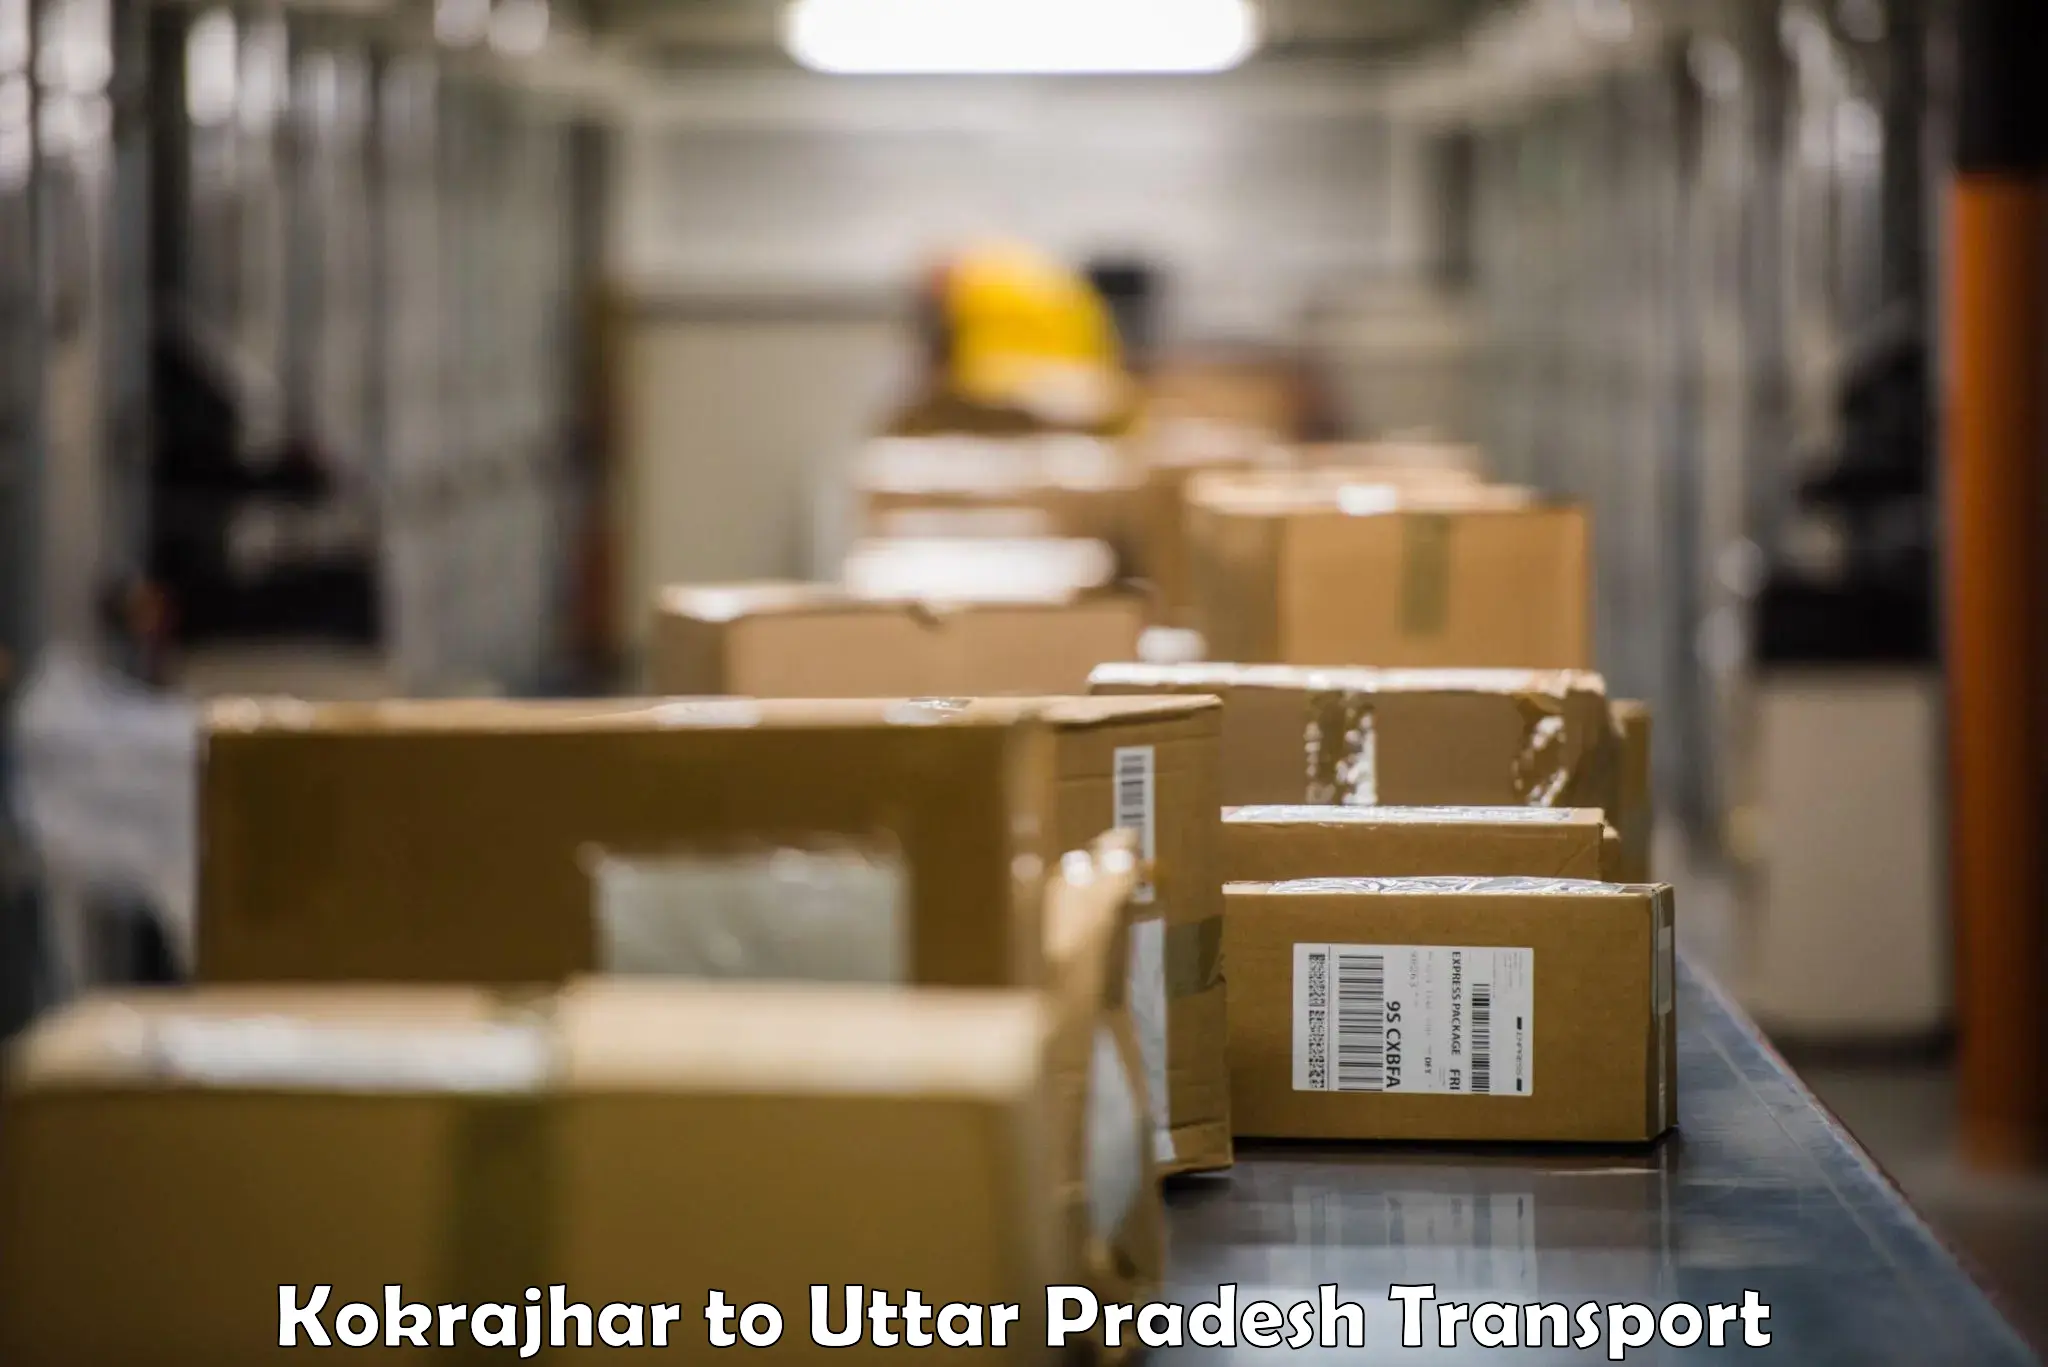 Cargo transportation services Kokrajhar to Faridpur